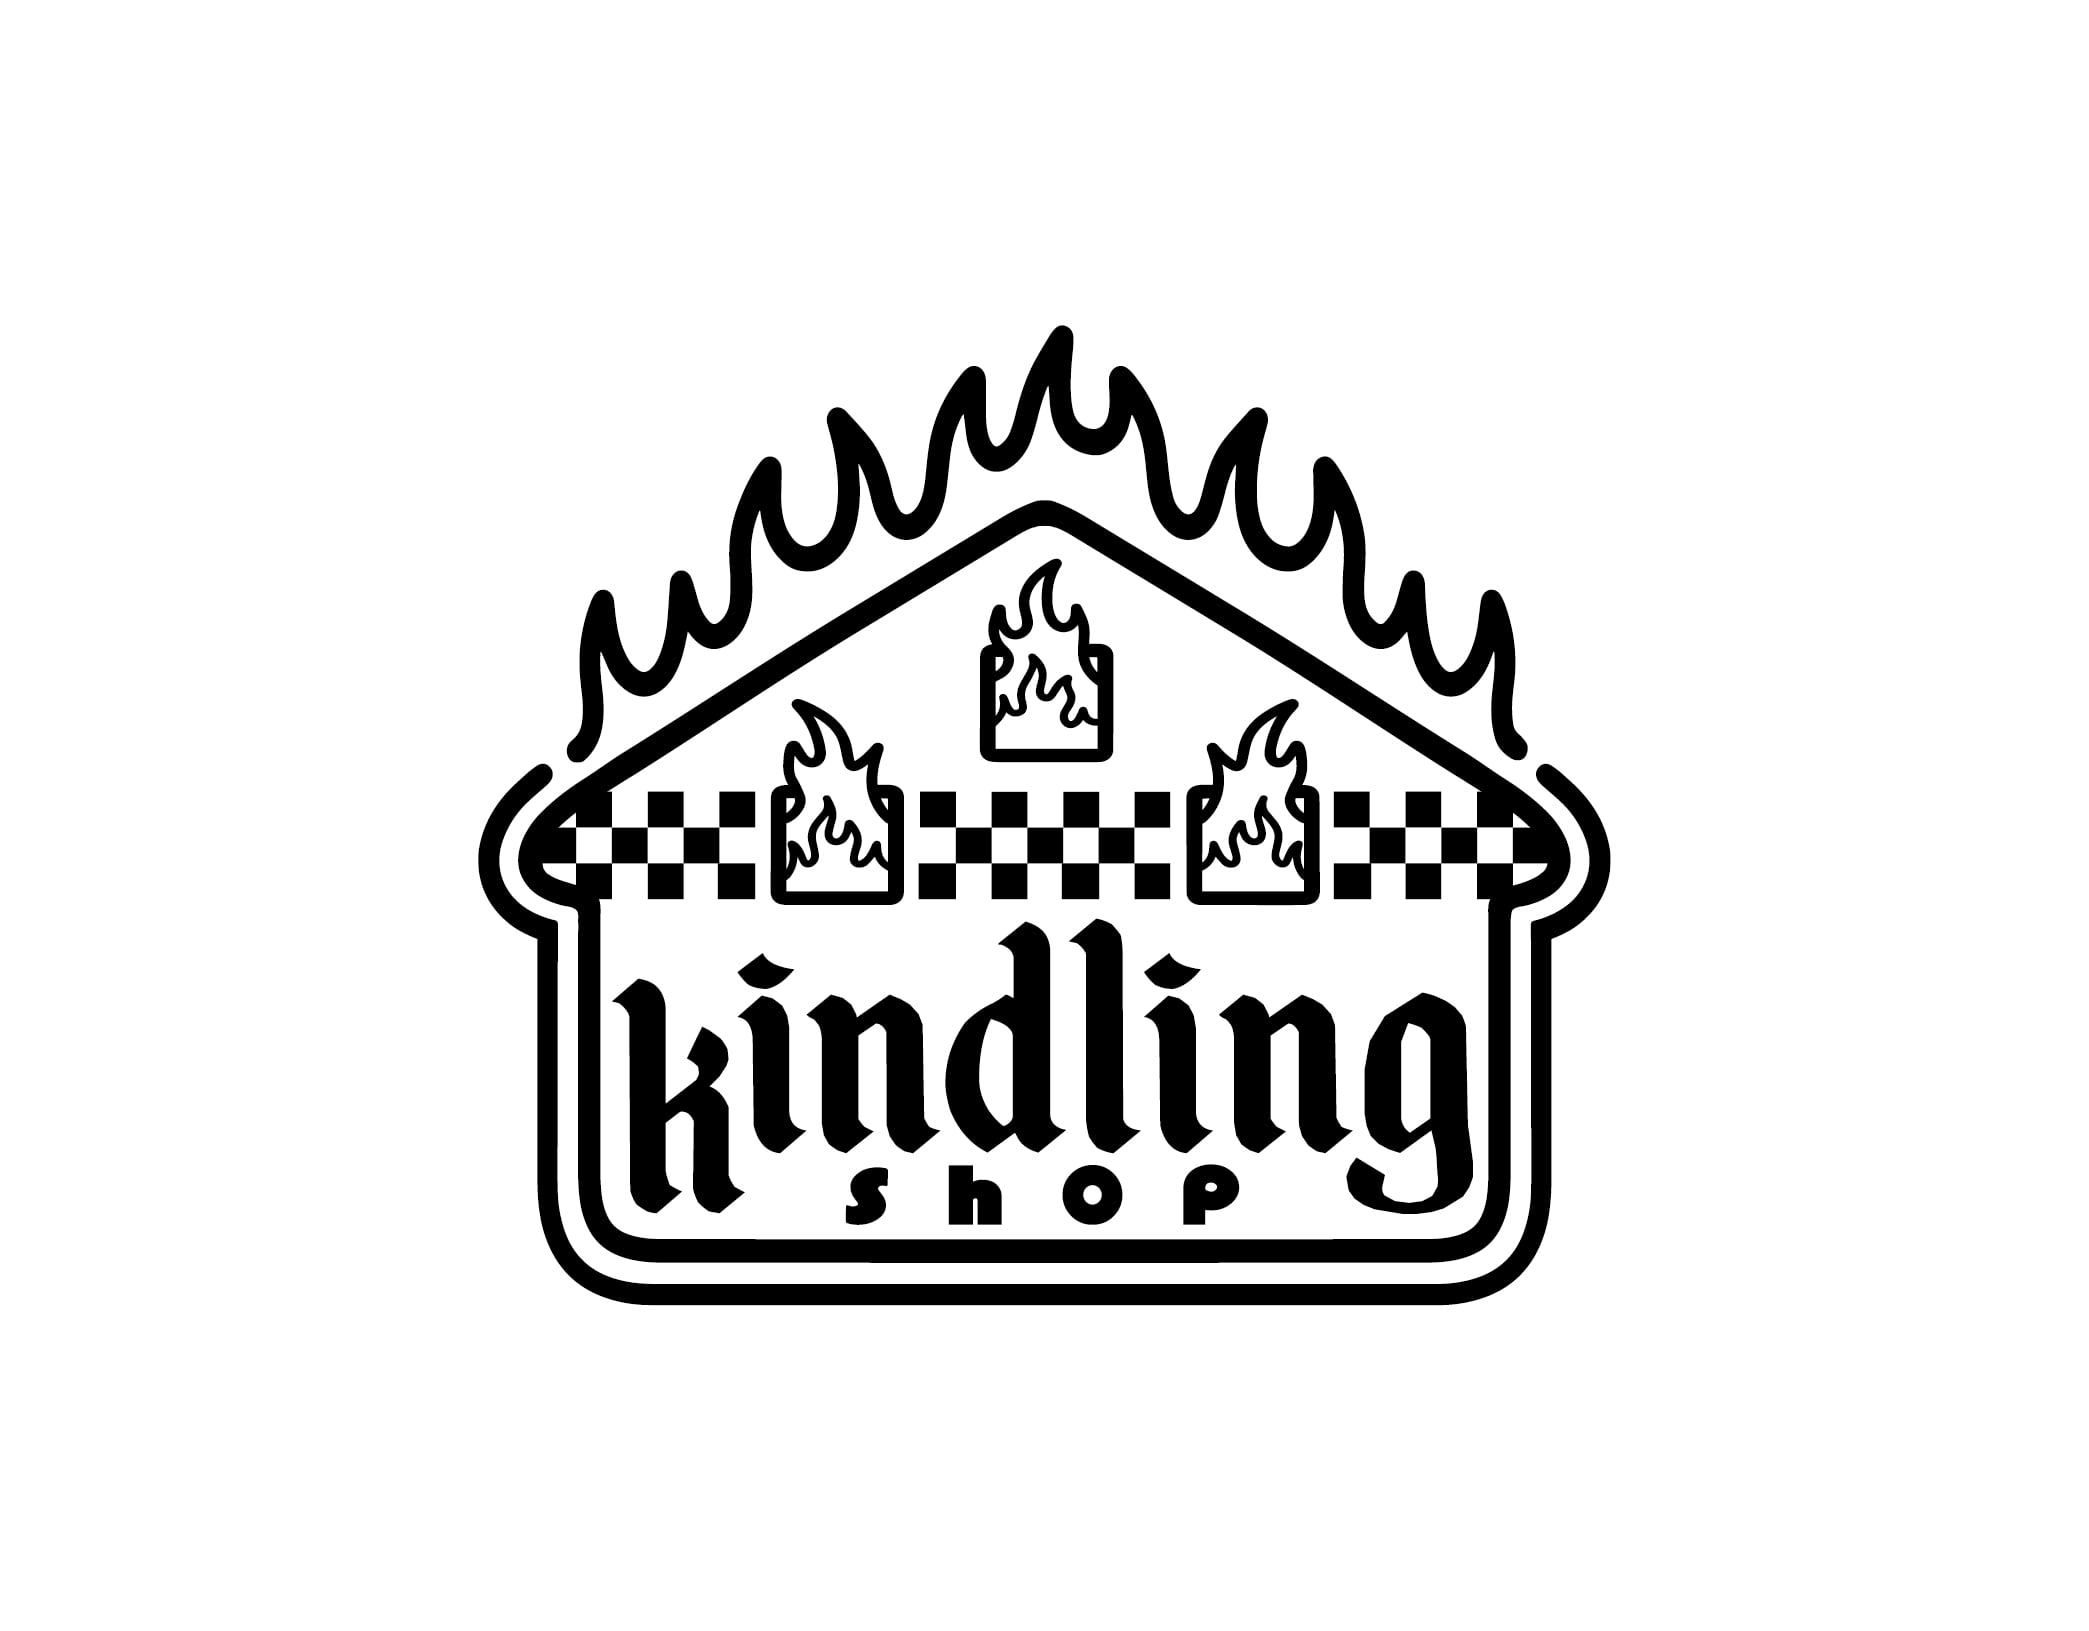 Kindling Shop